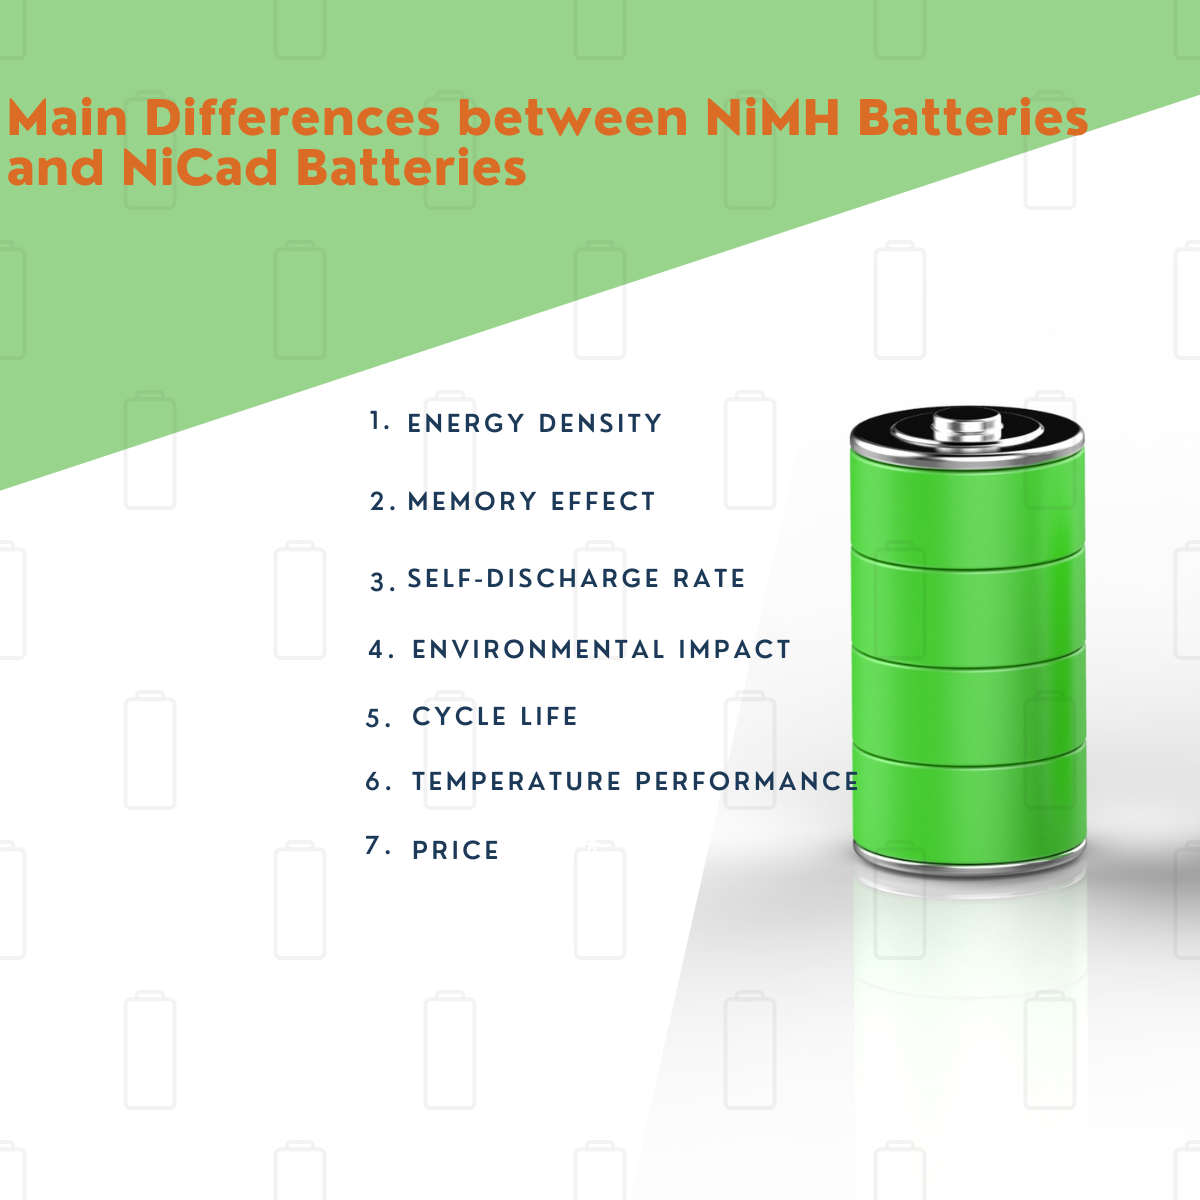 Galvenās atšķirības starp NiMH baterijām un NiCad baterijām